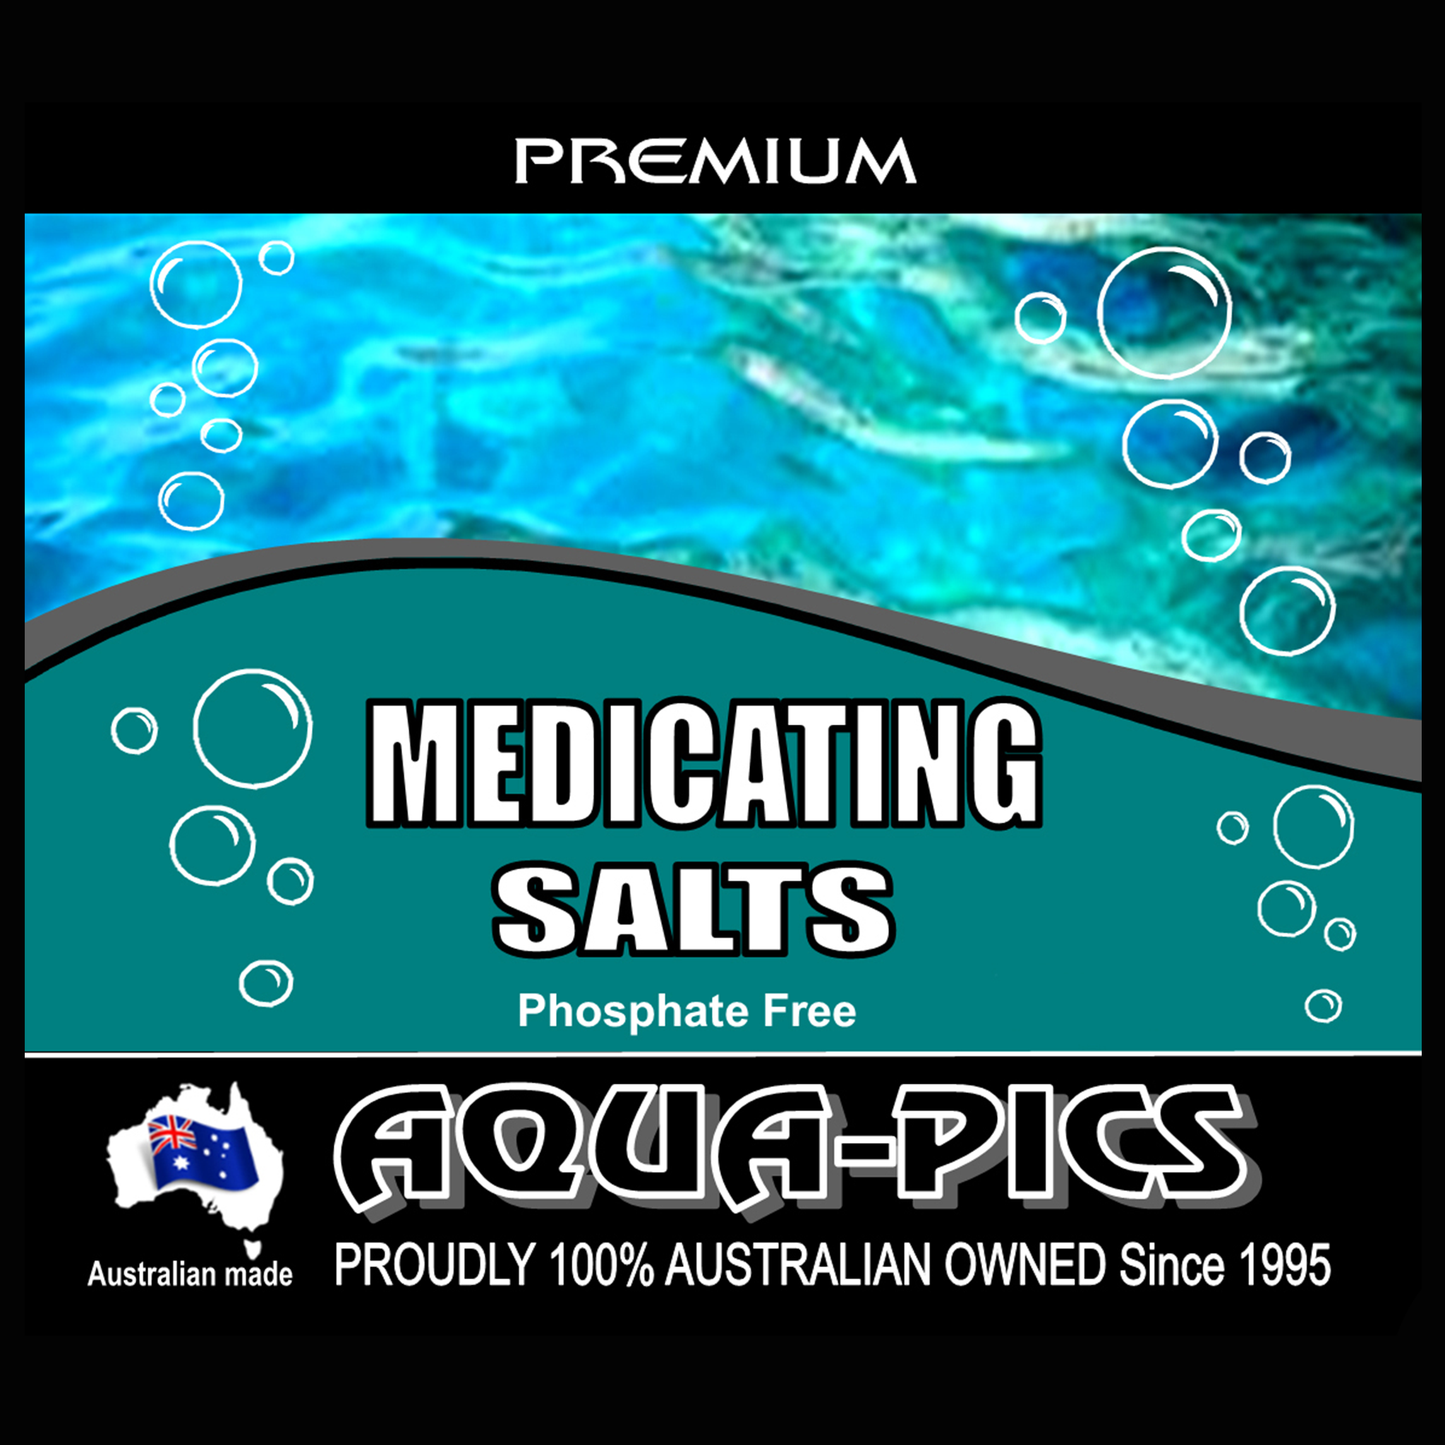 Medicating Salts 250g